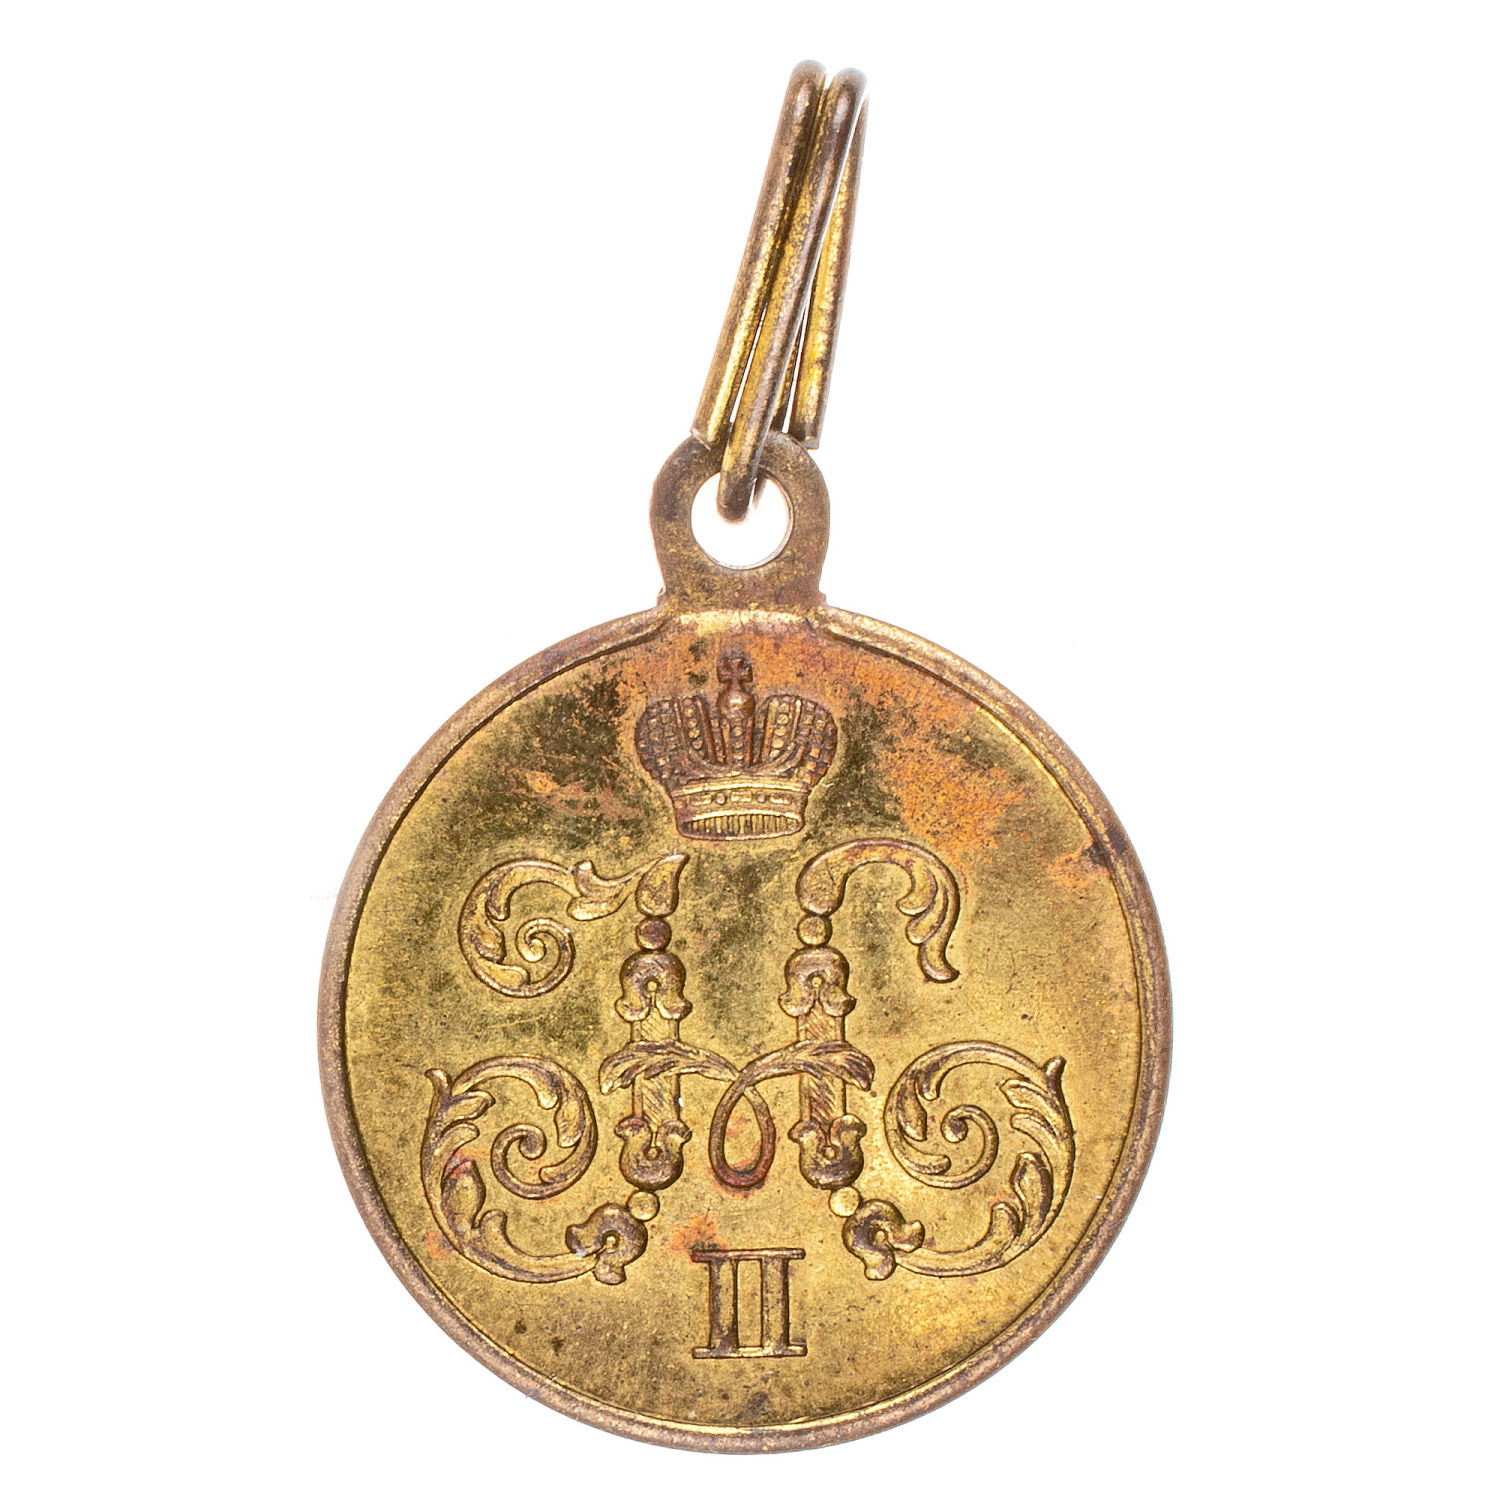 Медаль "За поход в Китай 1900 - 1901 ". Светлая бронза. Частник.